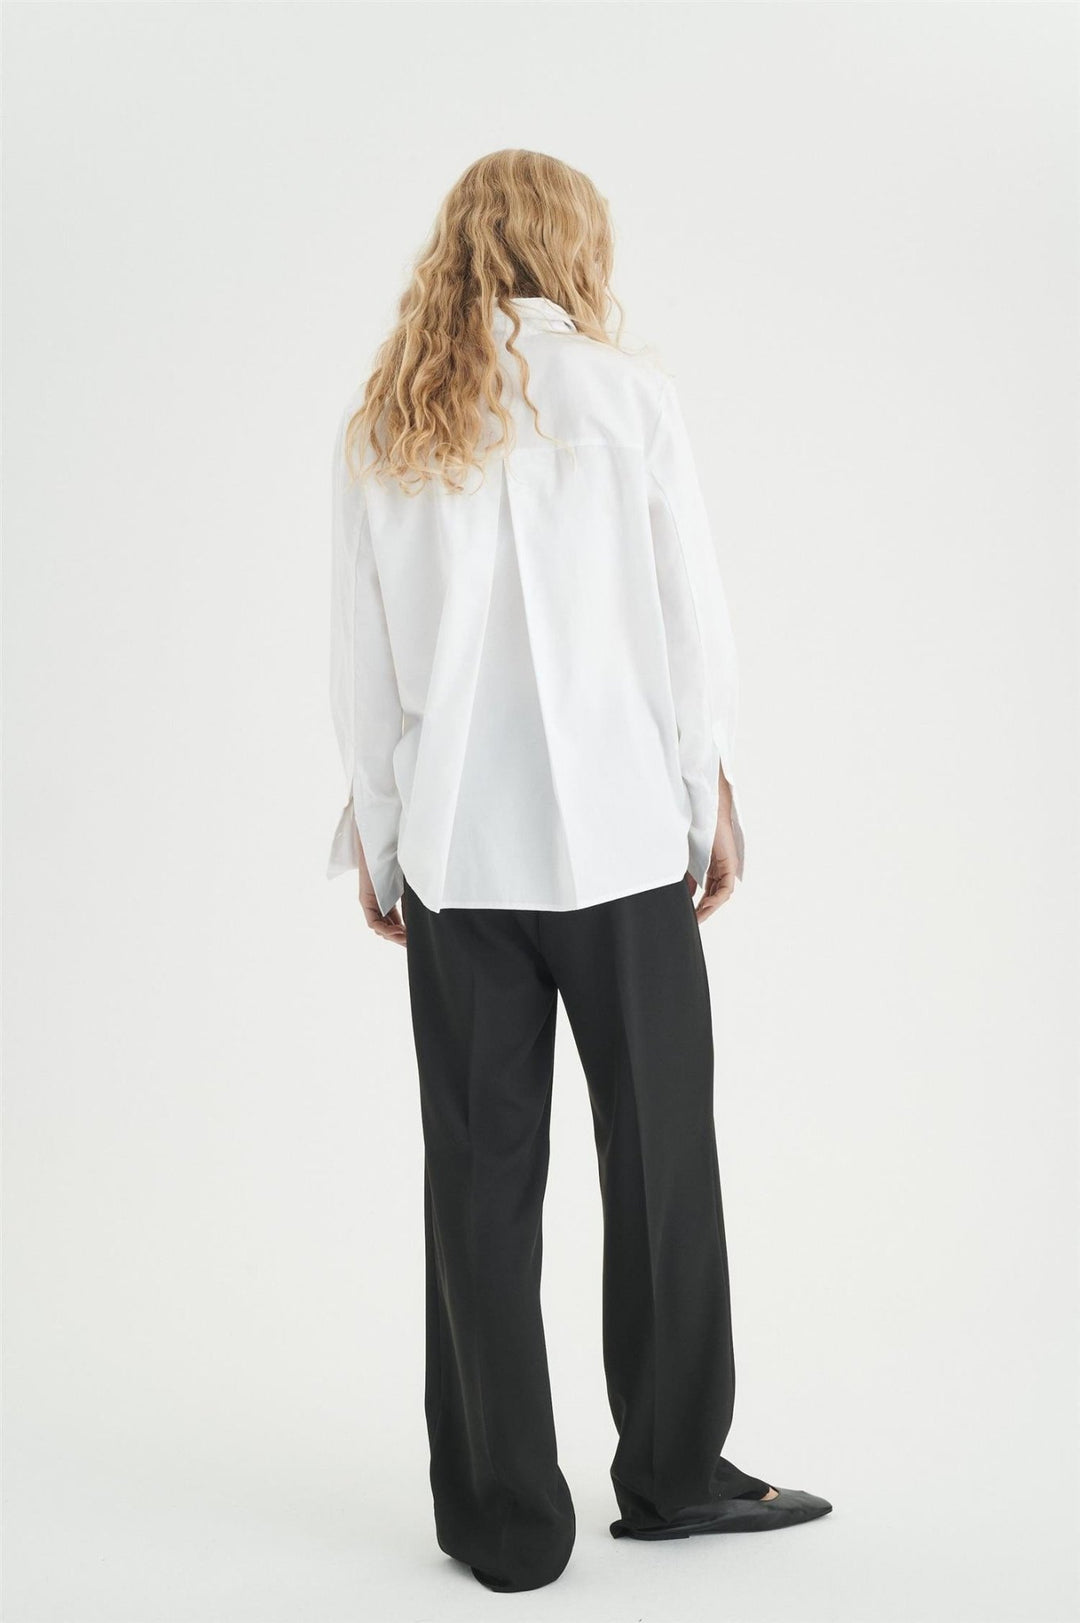 Vexiw Shirt Pure White | Skjorter og bluser | Smuk - Dameklær på nett